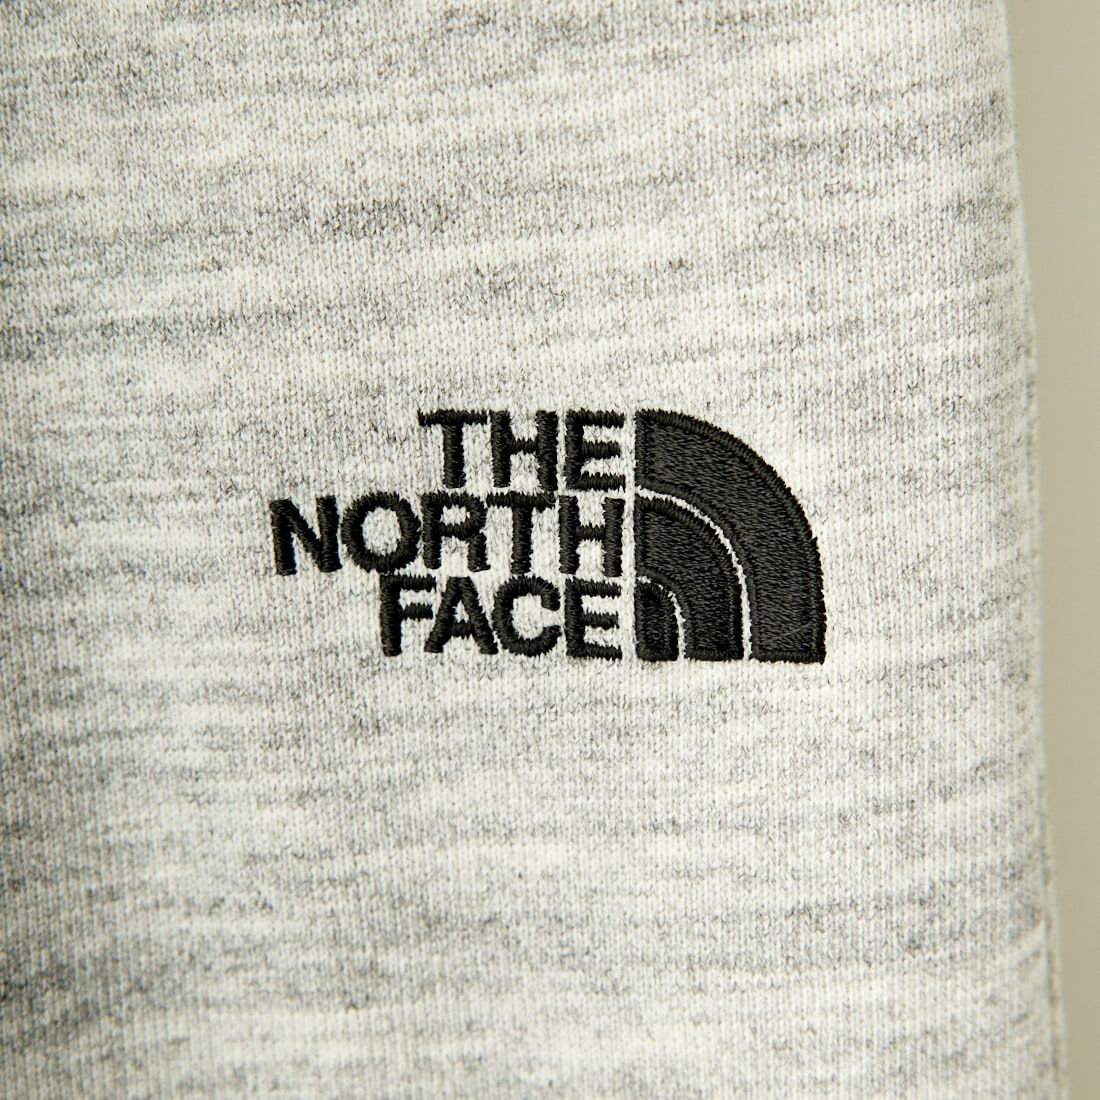 THE NORTH FACE [ザ ノースフェイス] ネバーストップ アイエヌジーパンツ [NB32450] Z